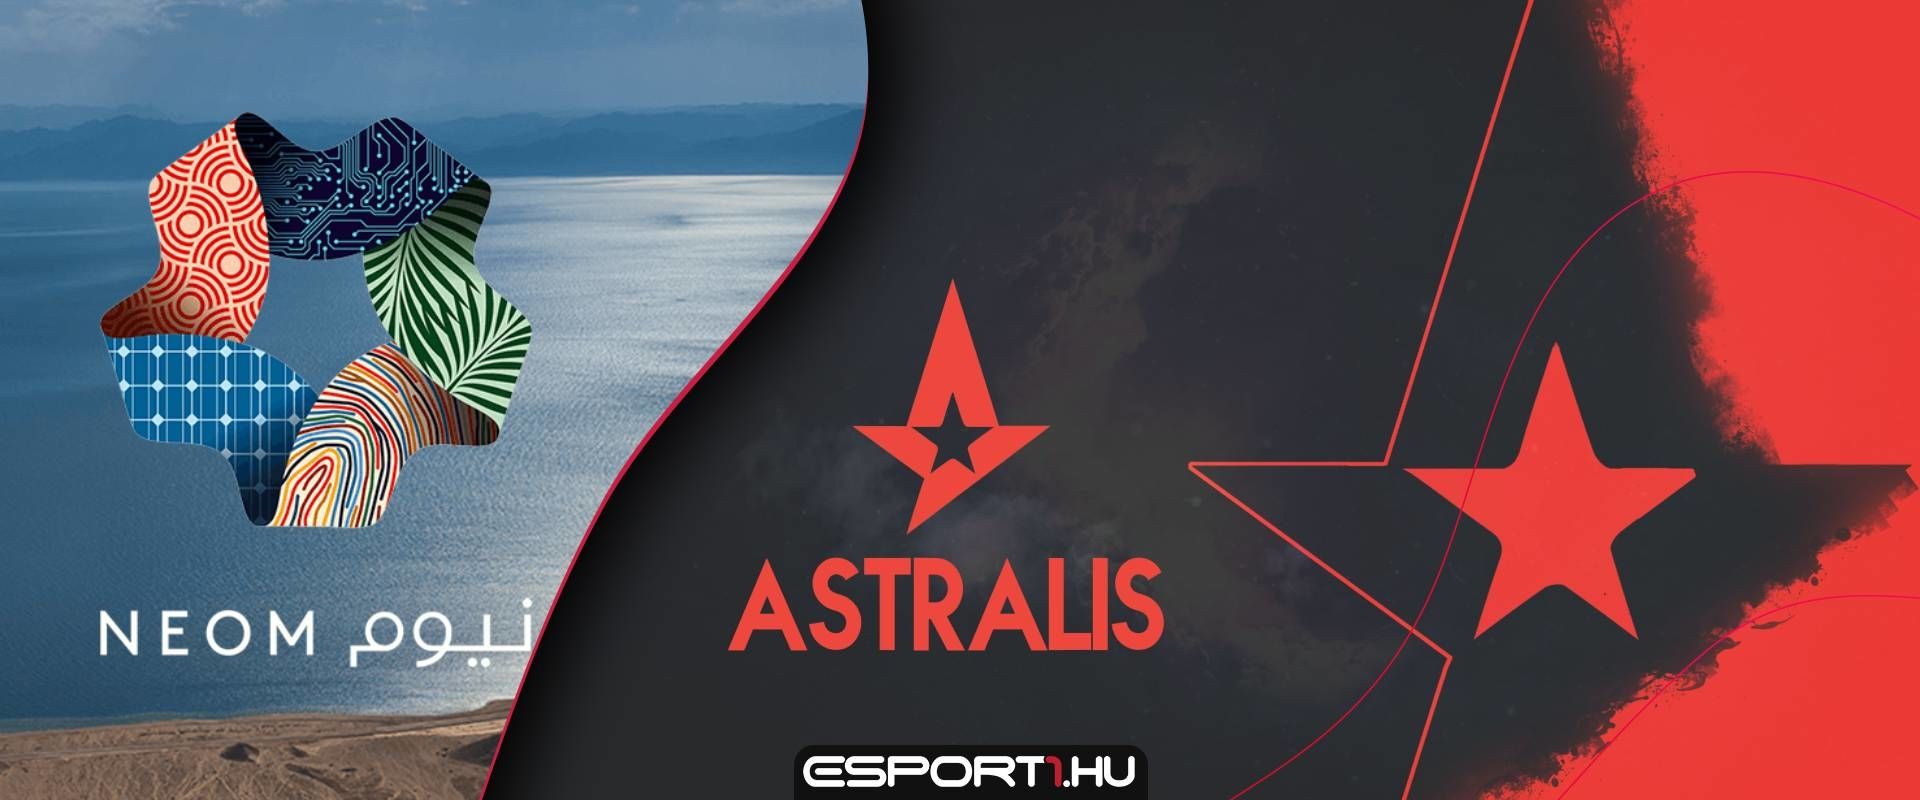 A NEOM botrány miatt az Astralis is hátat fordíthat a BLAST CS:GO versenyeinek